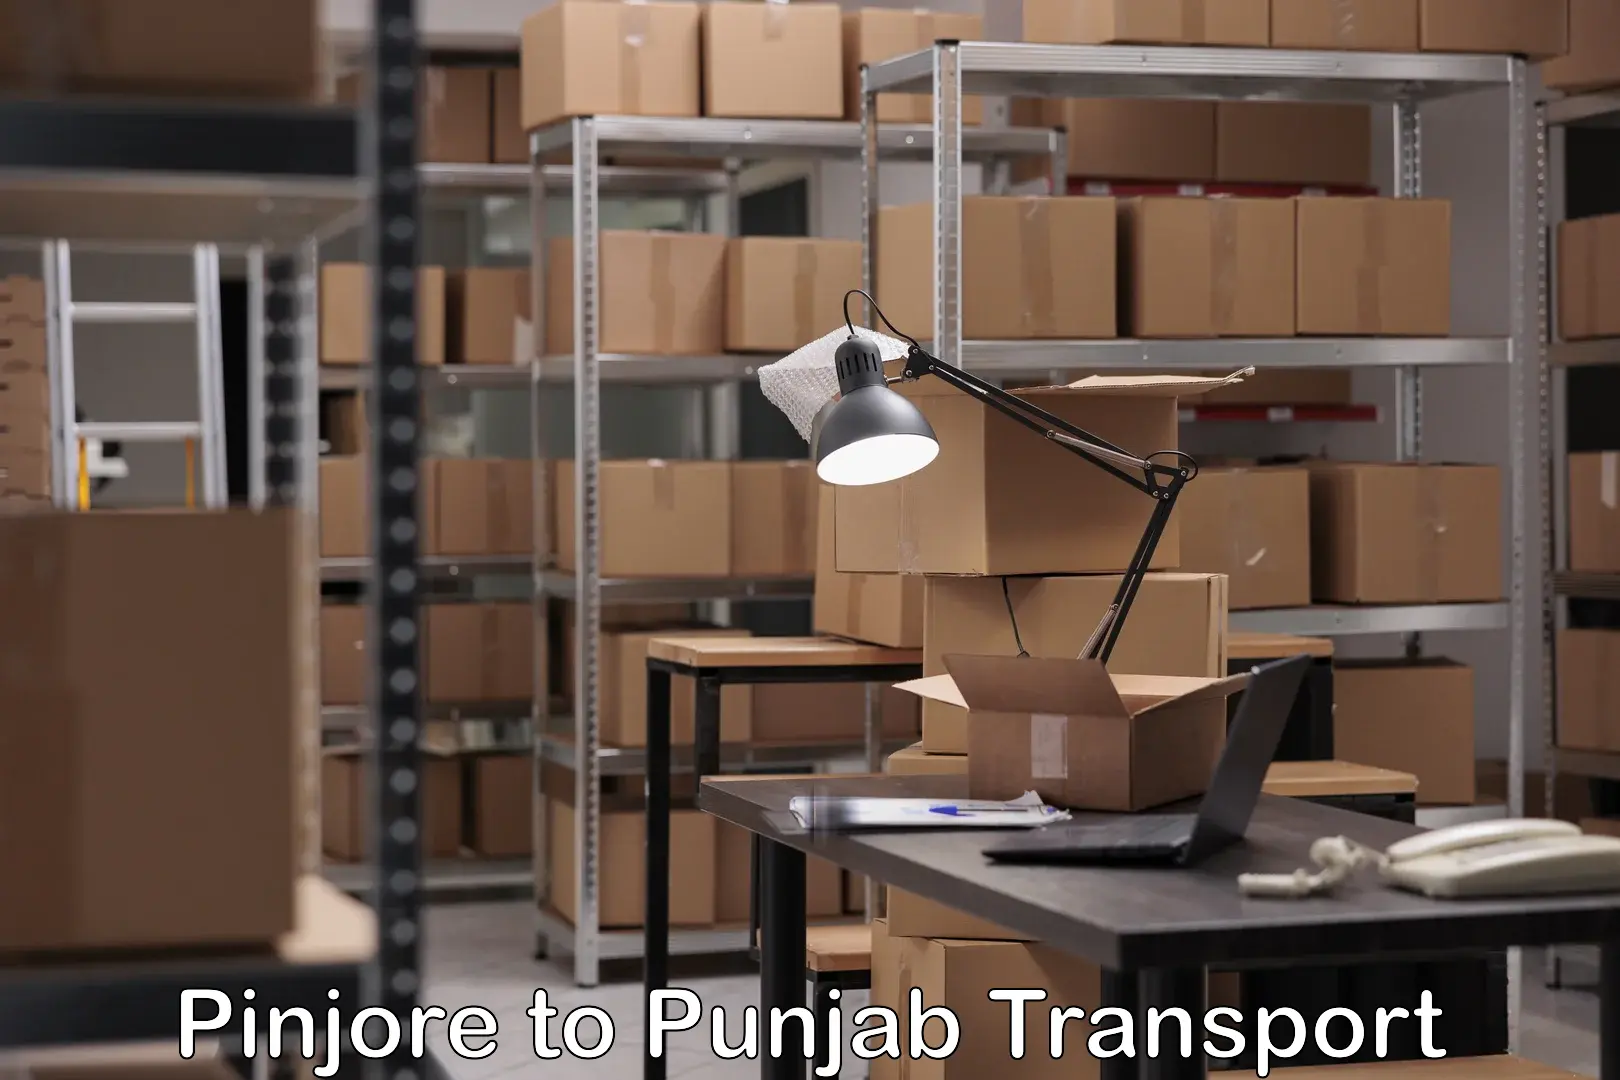 Furniture transport service Pinjore to Punjab